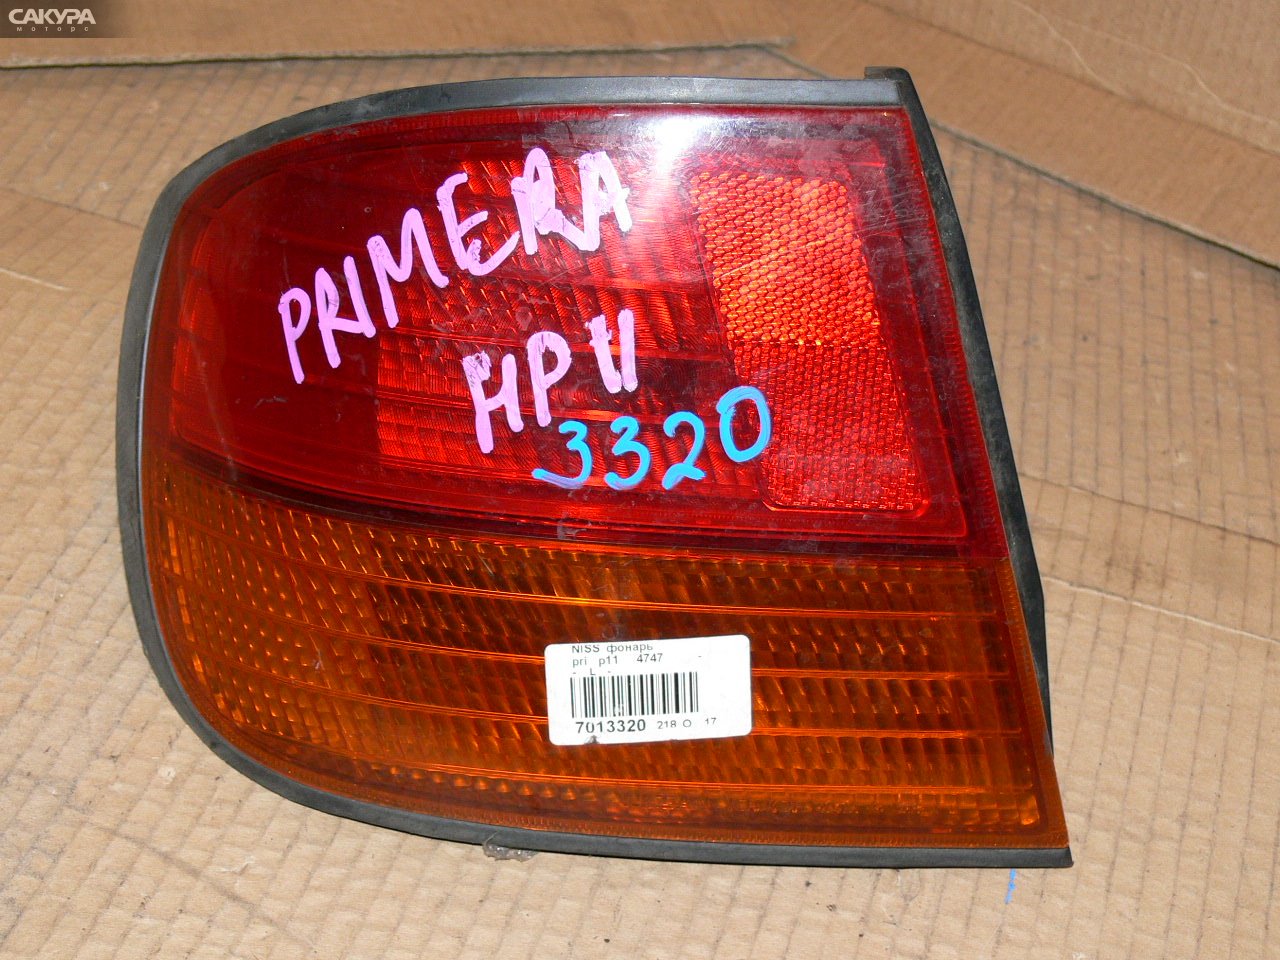 Фонарь стоп-сигнала левый Nissan Primera P11 4747: купить в Сакура Иркутск.